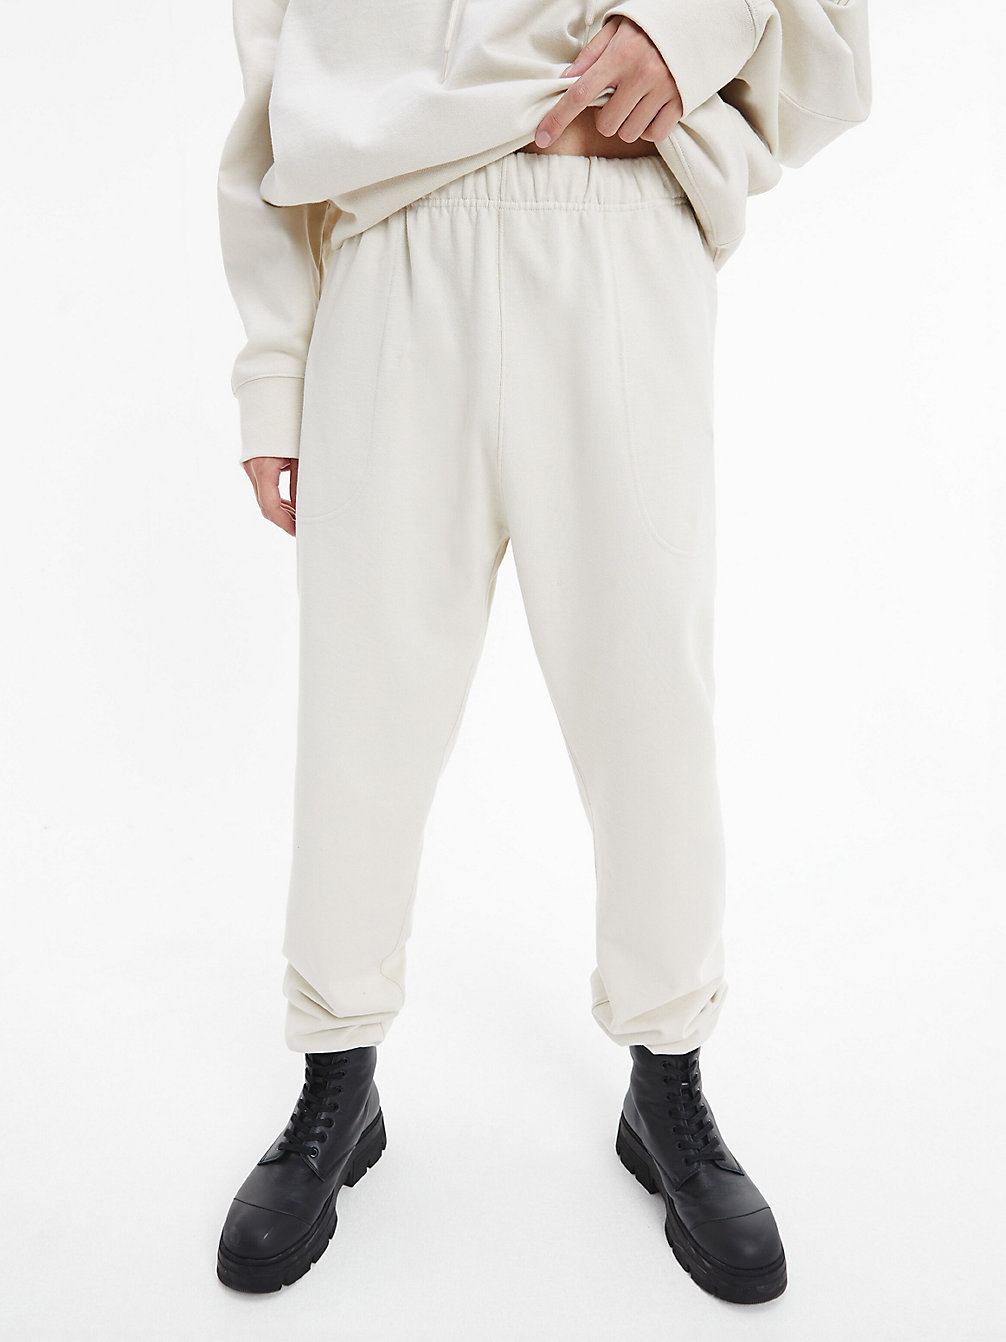 BONE WHITE > Swobodne Spodnie Dresowe Unisex - CK Standards > undefined Unisex - Calvin Klein